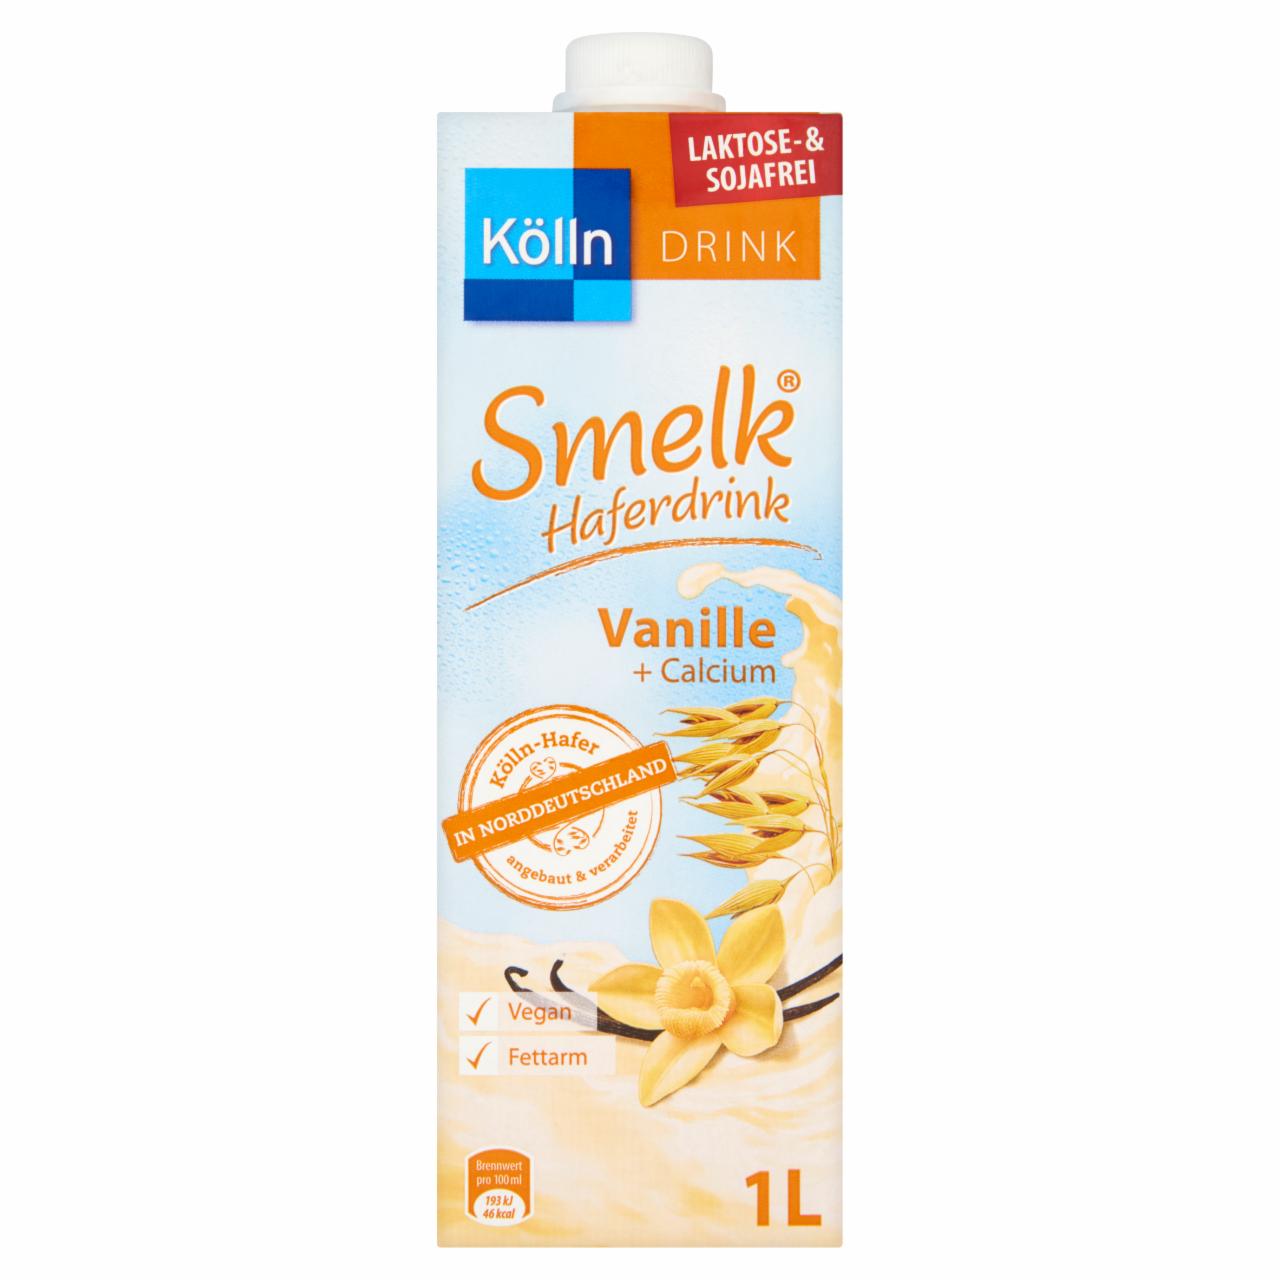 Képek - Kölln Smelk vaníliás ízű zabital 1000 ml